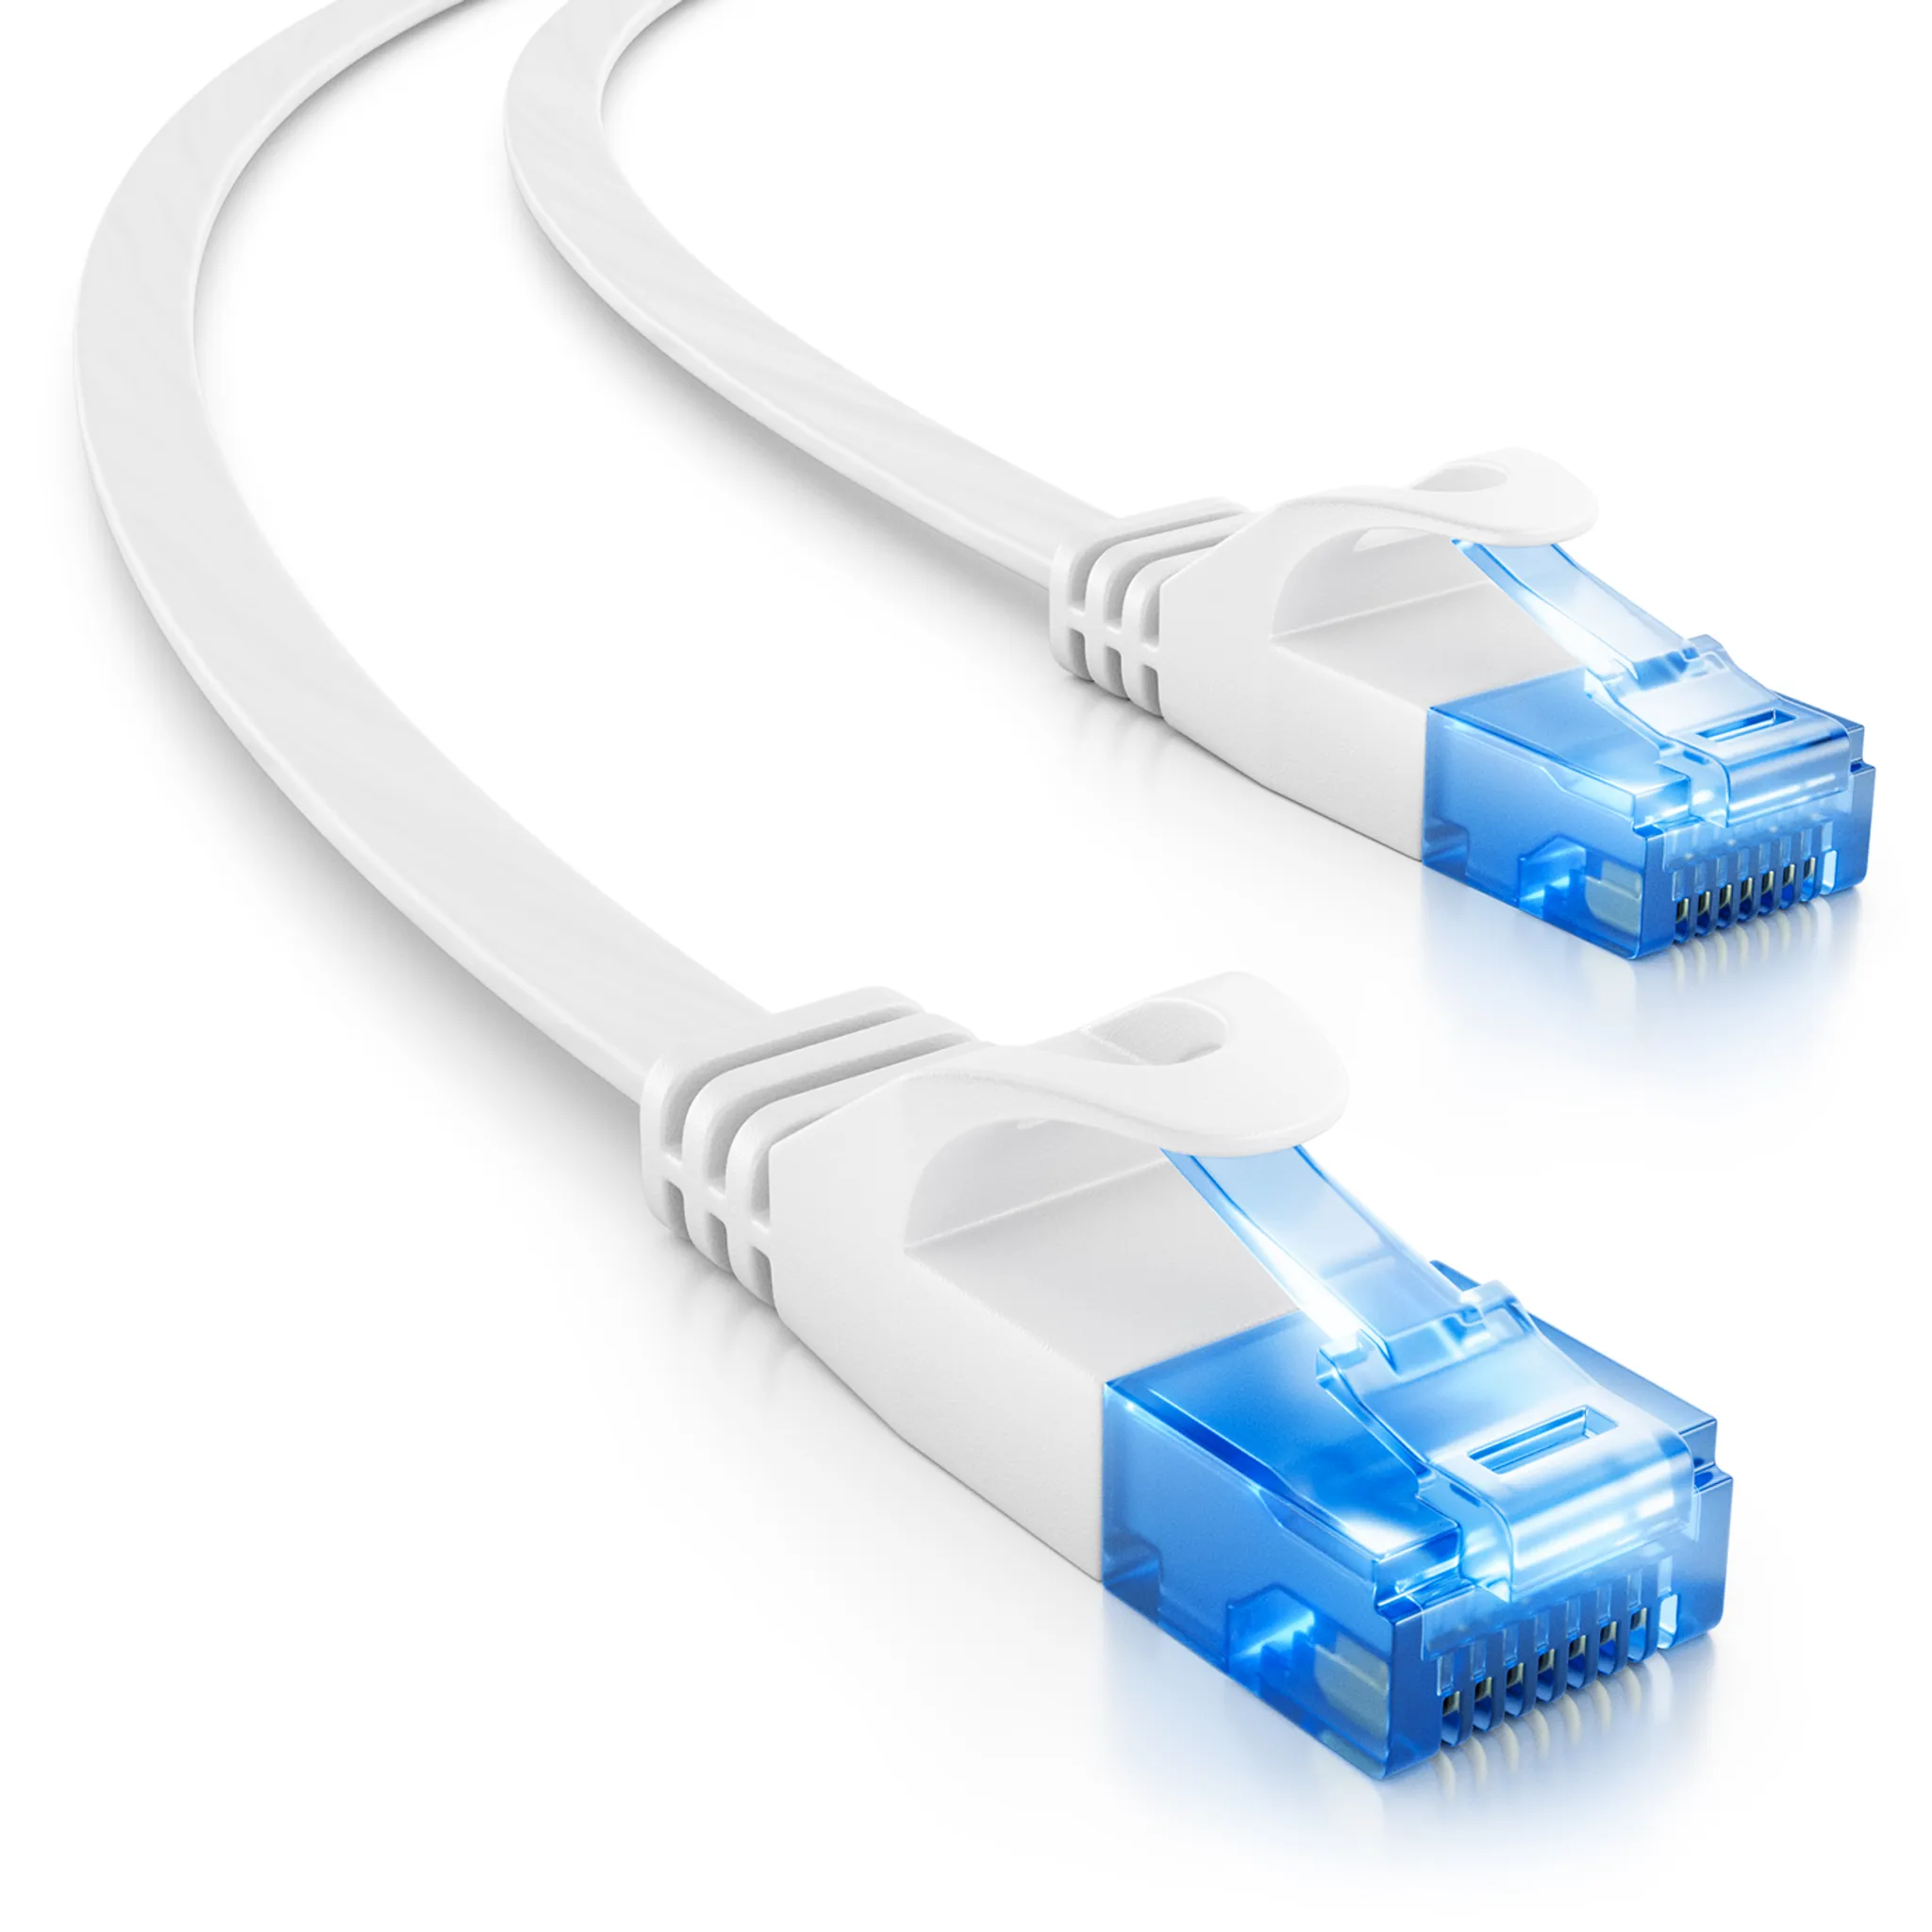 15 m Cat.6 Patchkabel RJ45 LAN Kabel S-FTP/PIMF braun günstig online kaufen